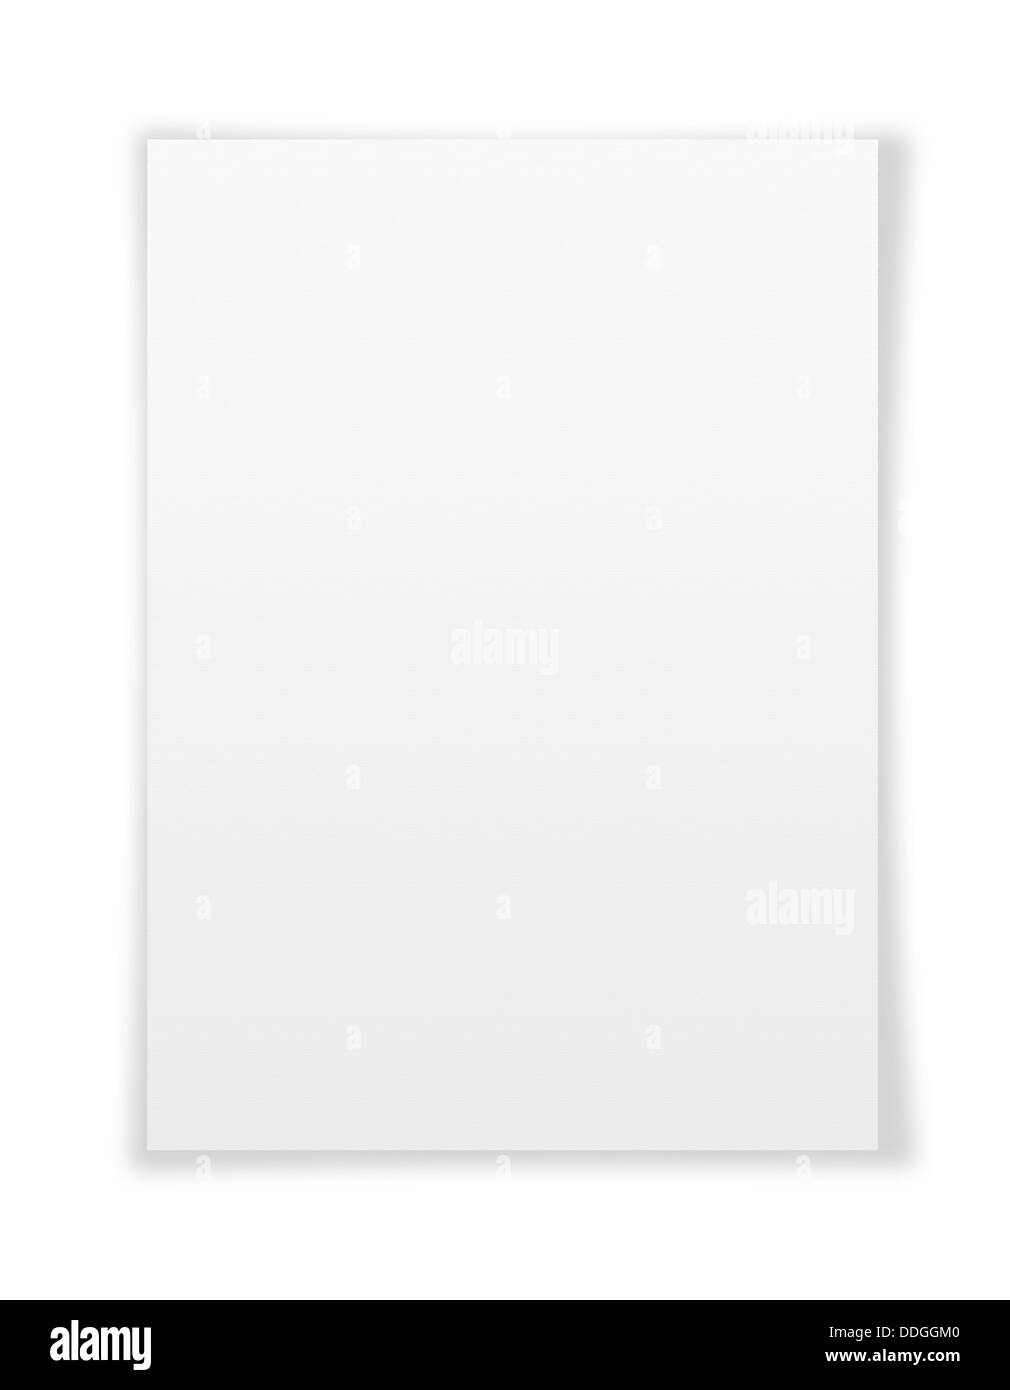 Tenir Le Papier Blanc Du Blanc A4 Photo stock - Image du cache, message:  58696014